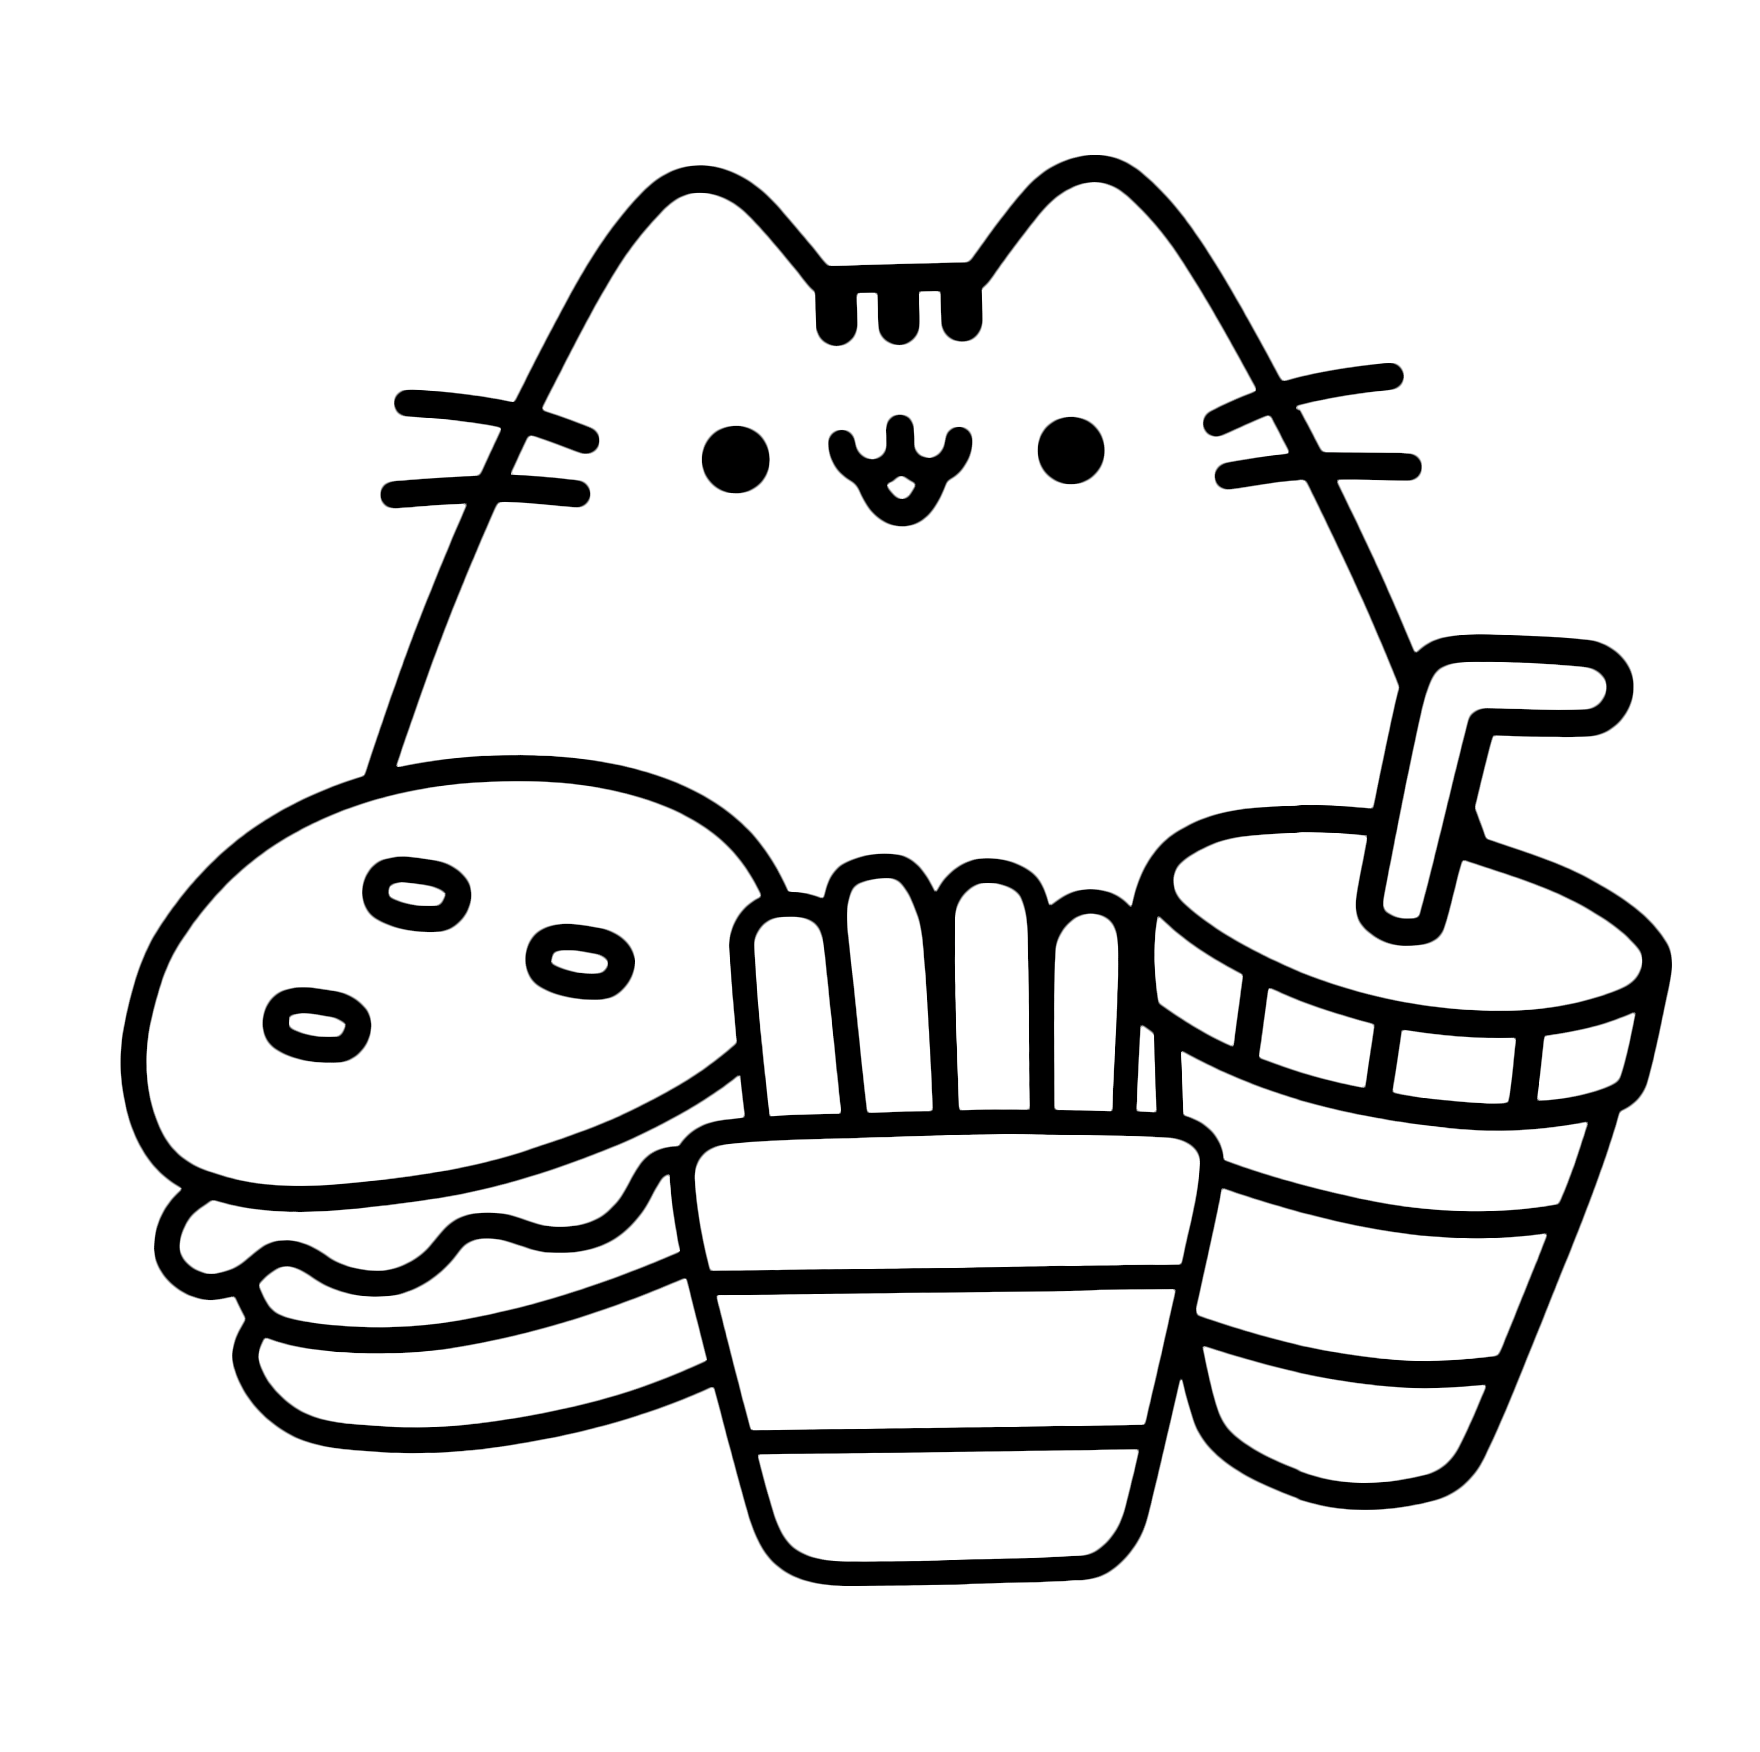 Pusheen Cat - Pusheen Cat si mangia un panino con patatine e una bibita